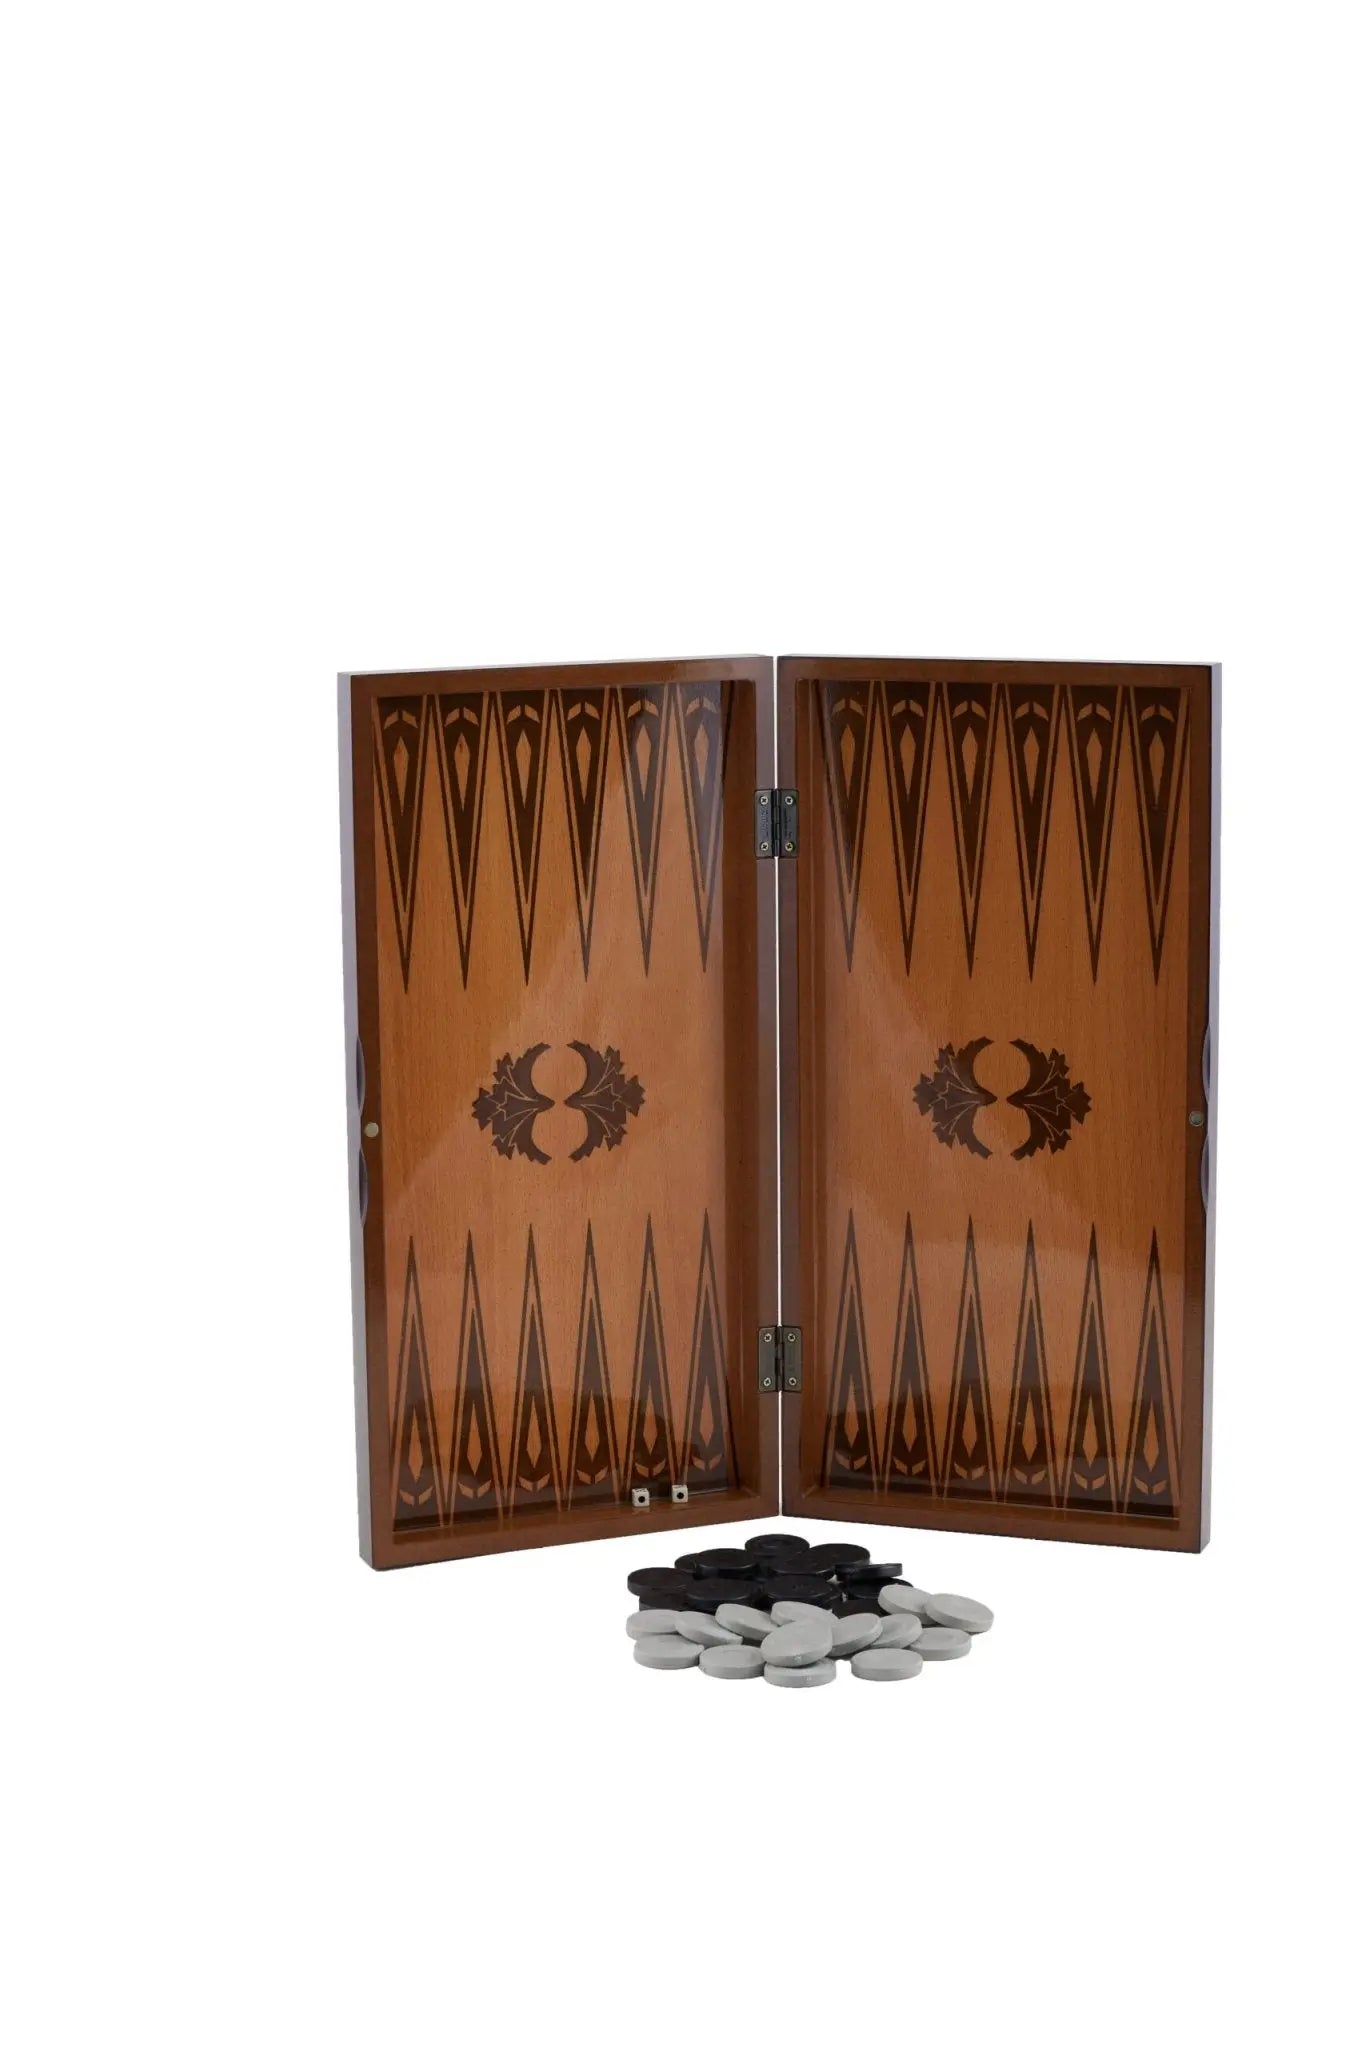 Eser Pearl Moroccan Backgammon Big Size - Armani Gallery